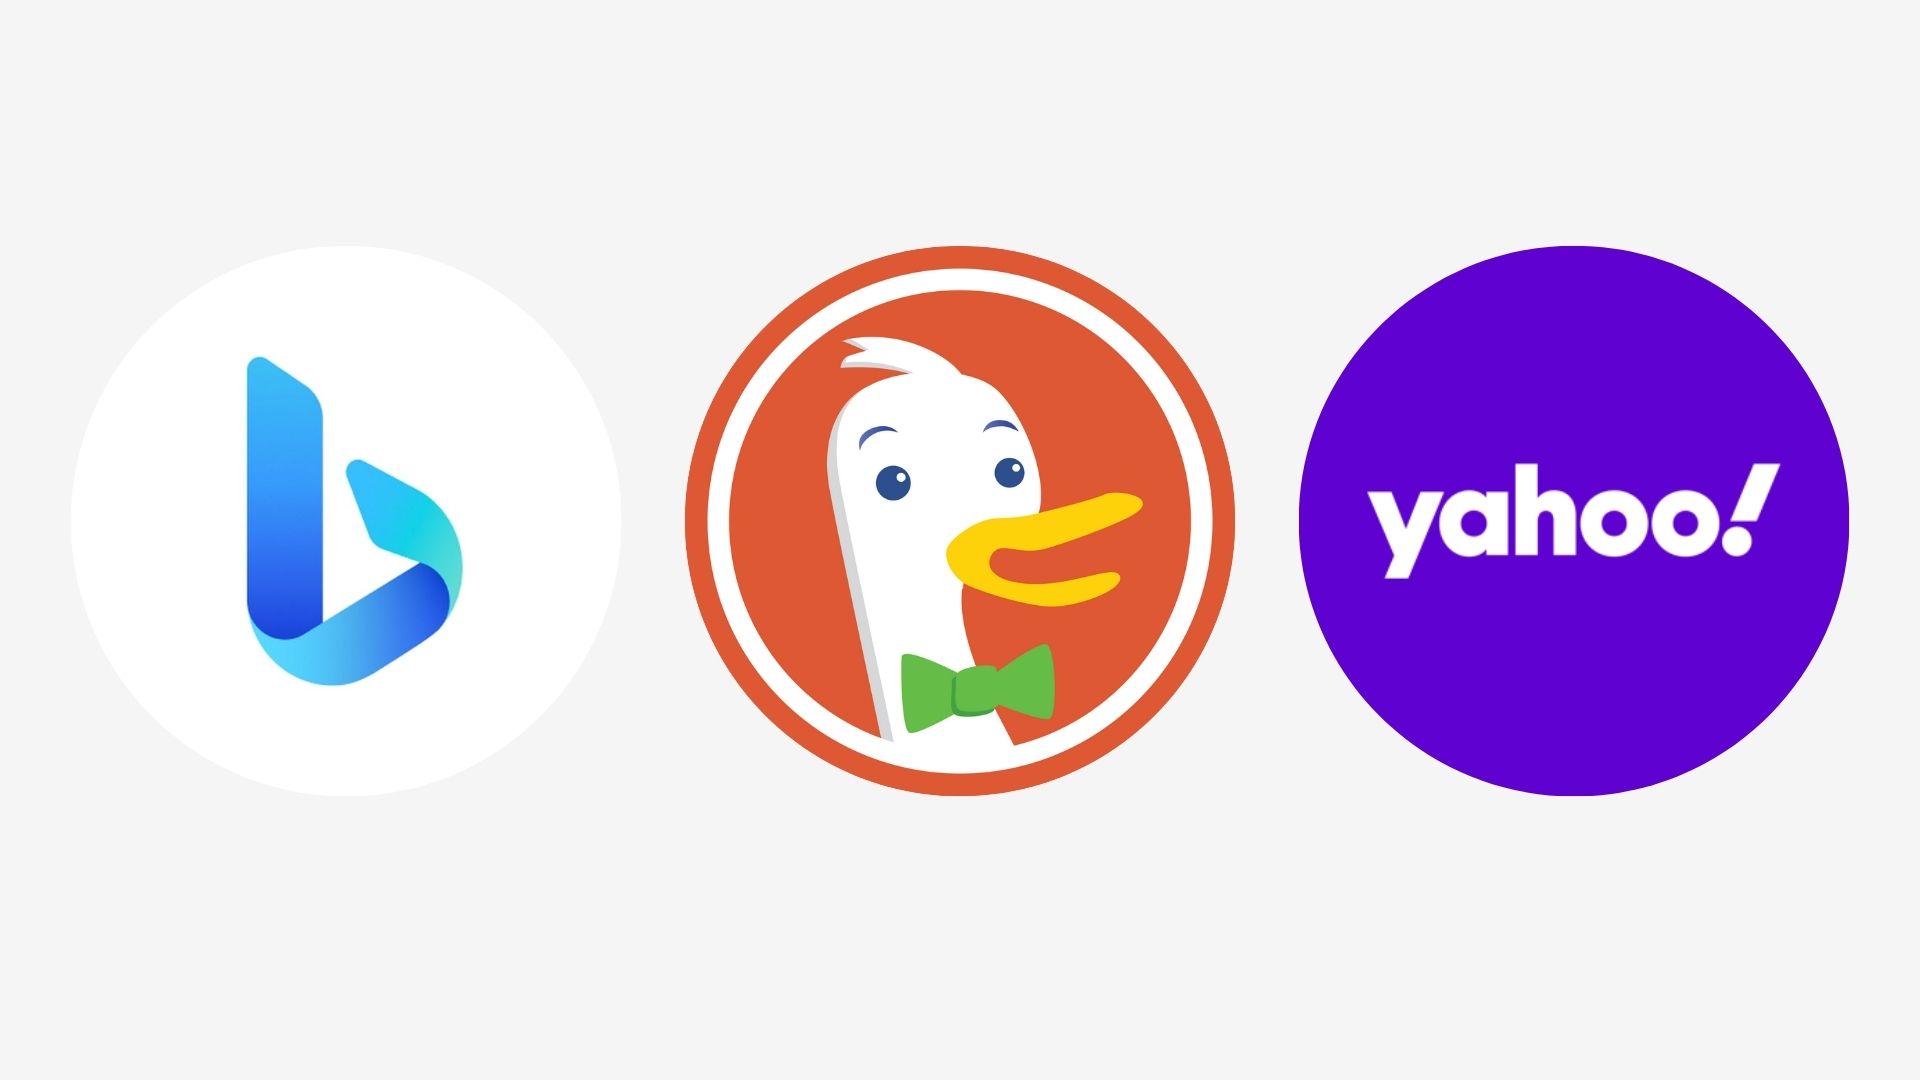 logos-van-bing-duckduckgo-yahoo